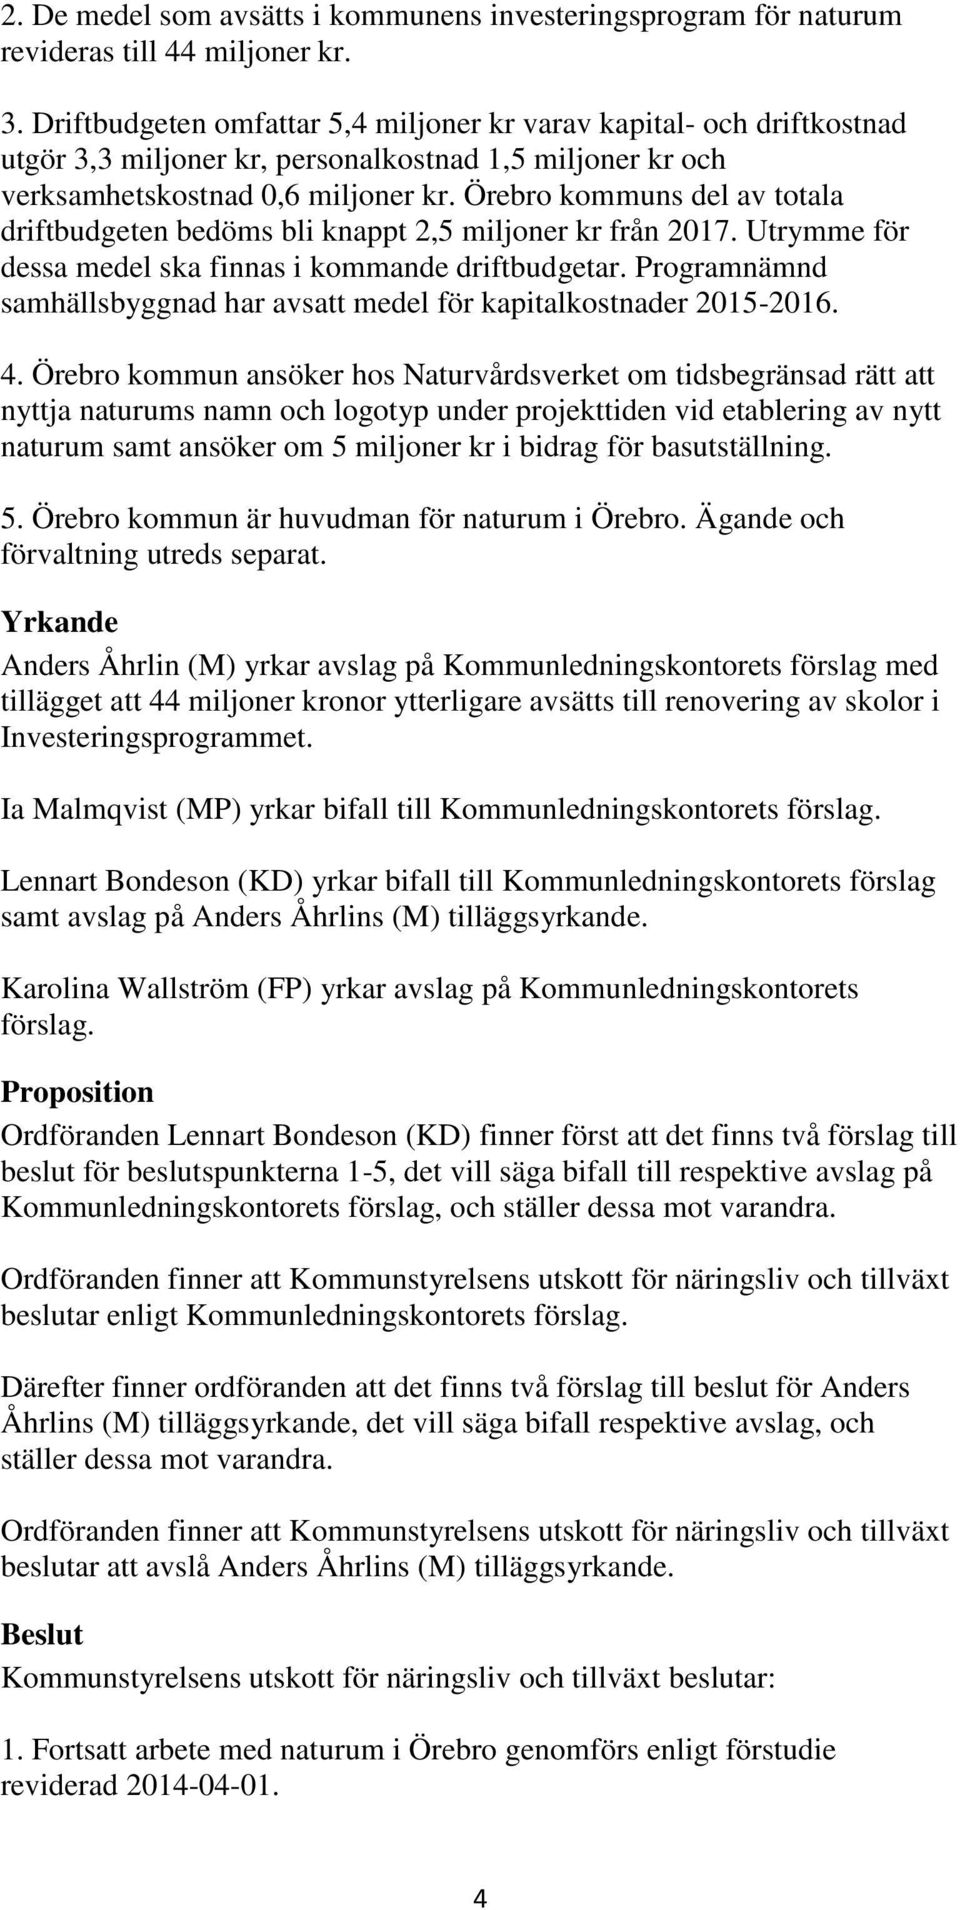 Örebro kommuns del av totala driftbudgeten bedöms bli knappt 2,5 miljoner kr från 2017. Utrymme för dessa medel ska finnas i kommande driftbudgetar.